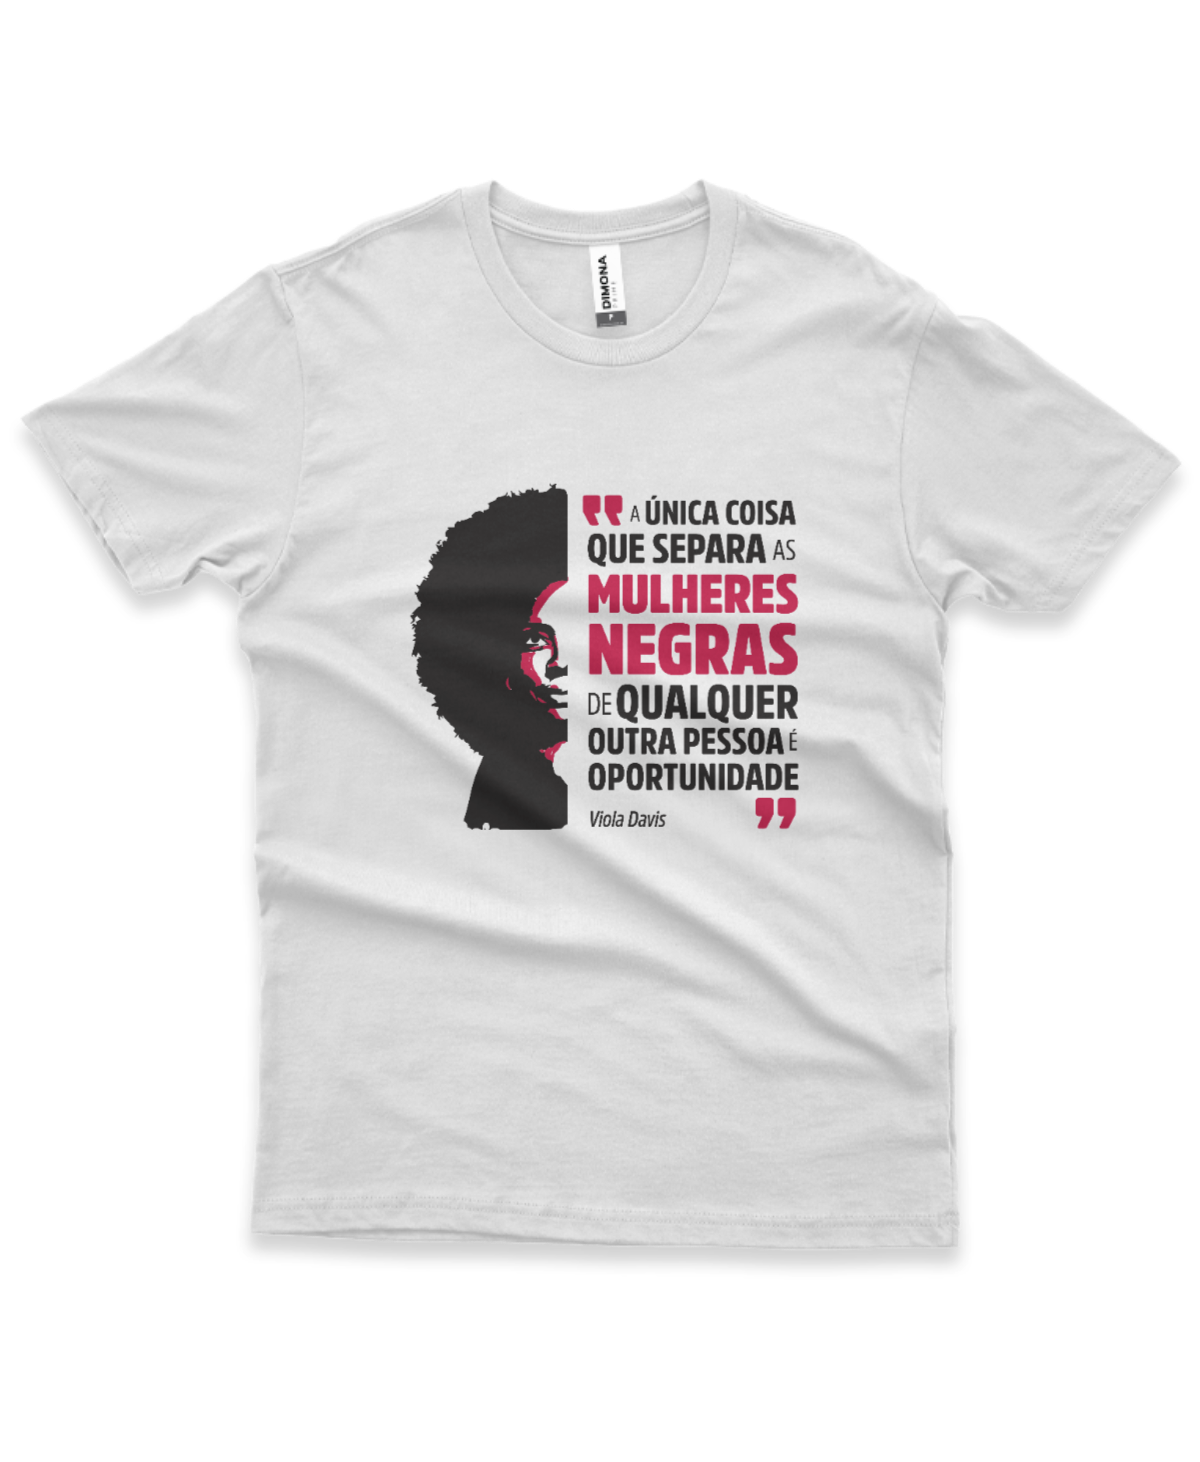 camiseta masculina cor branca com estampa ilustração Viola Davis e a frase "a única coisa que separa as mulheres negras de qualquer outra pessoa é a oportunidade" 